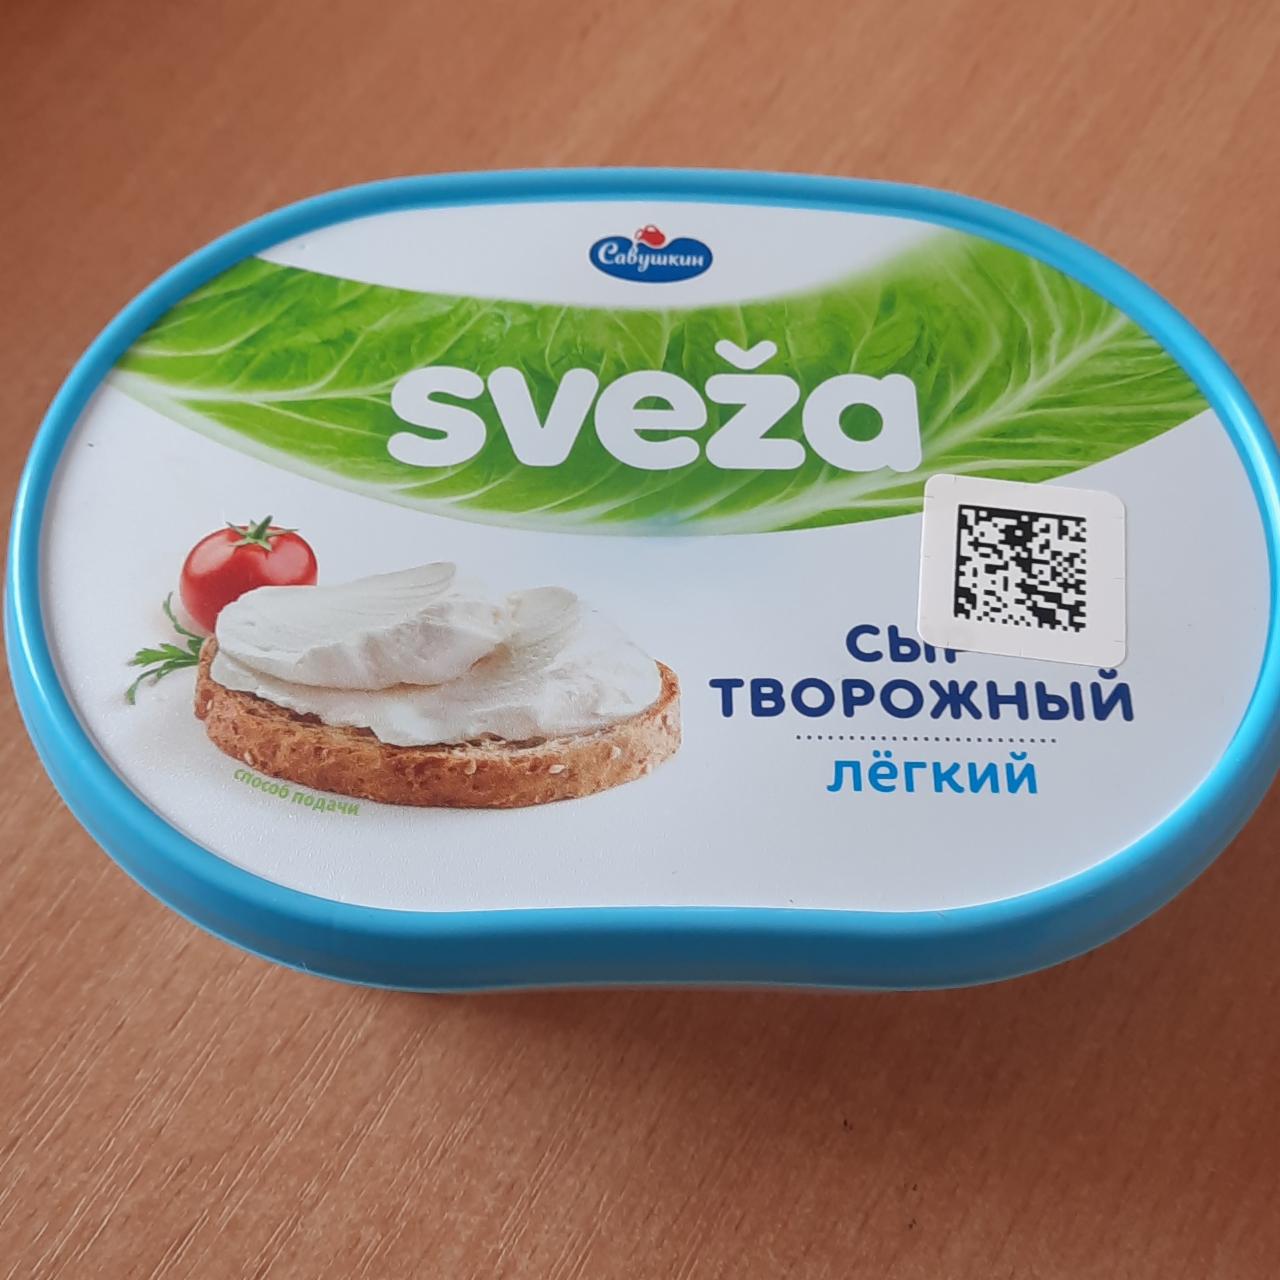 Фото - Сыр творожный легкий 35% Sveza Савушкин